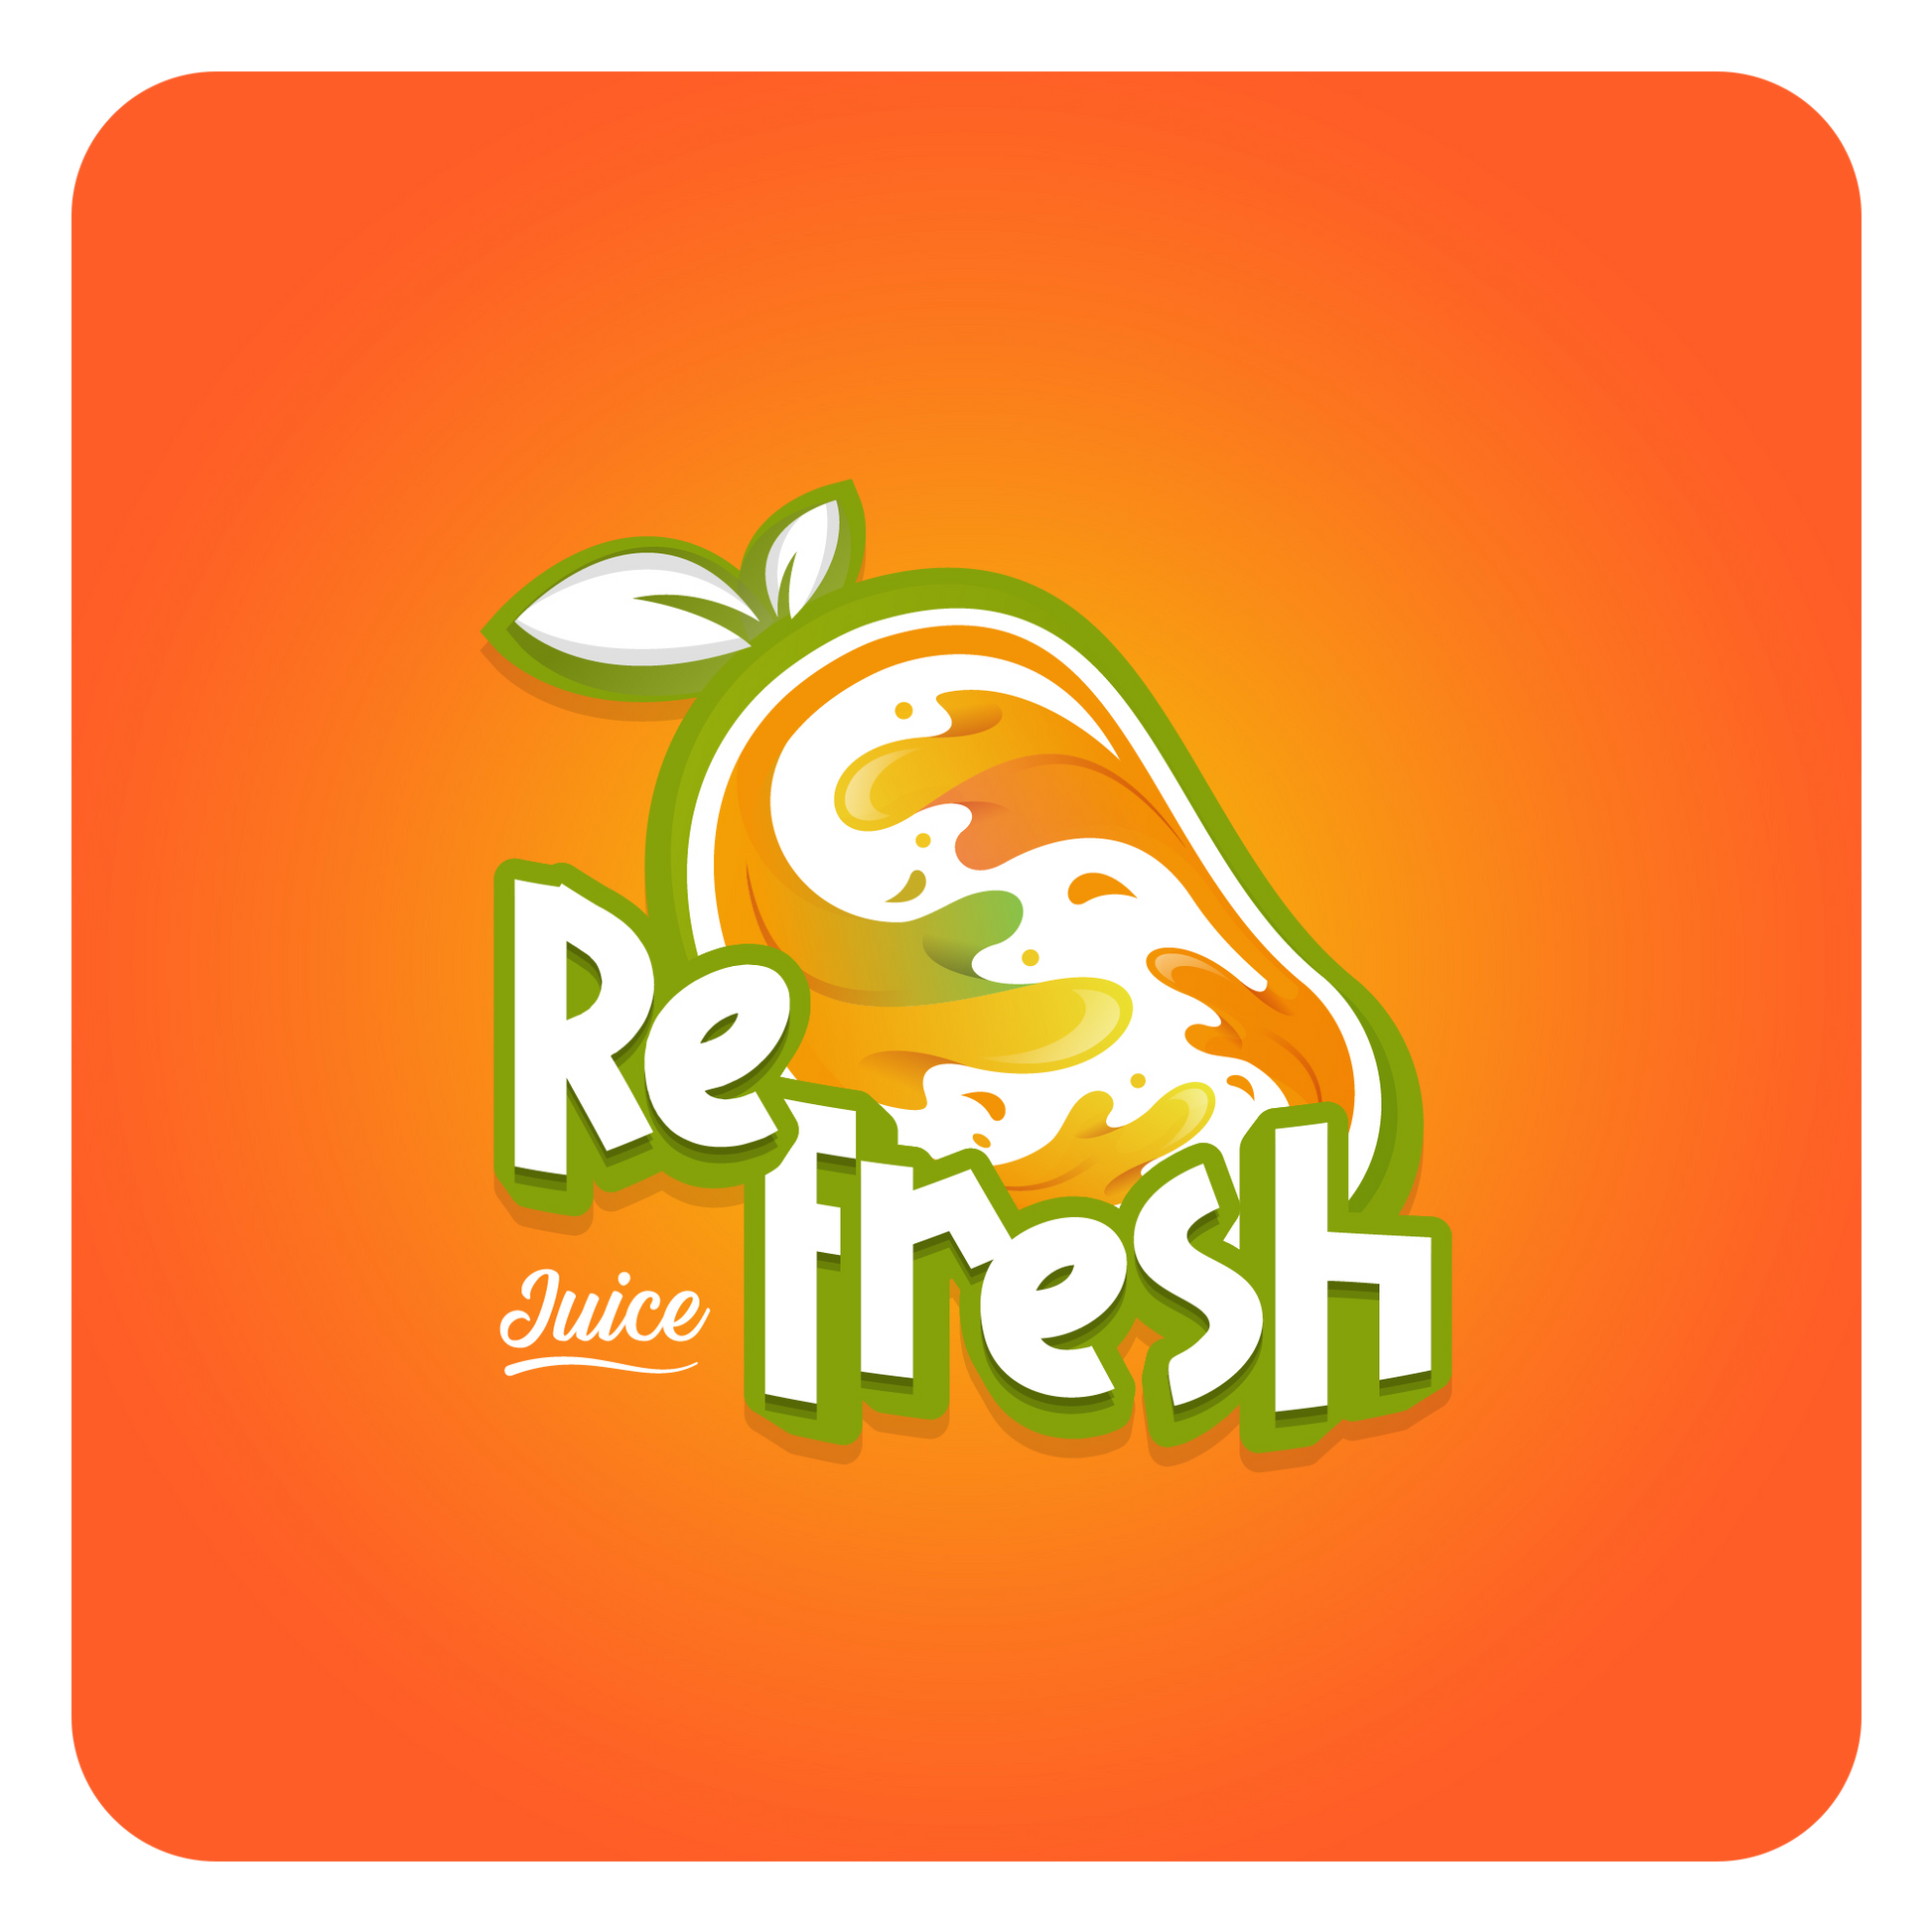 تصميم شعار لوجو عصائر وفواكه باللون البرتقالي والأخضر وبشكر عصري ومميز